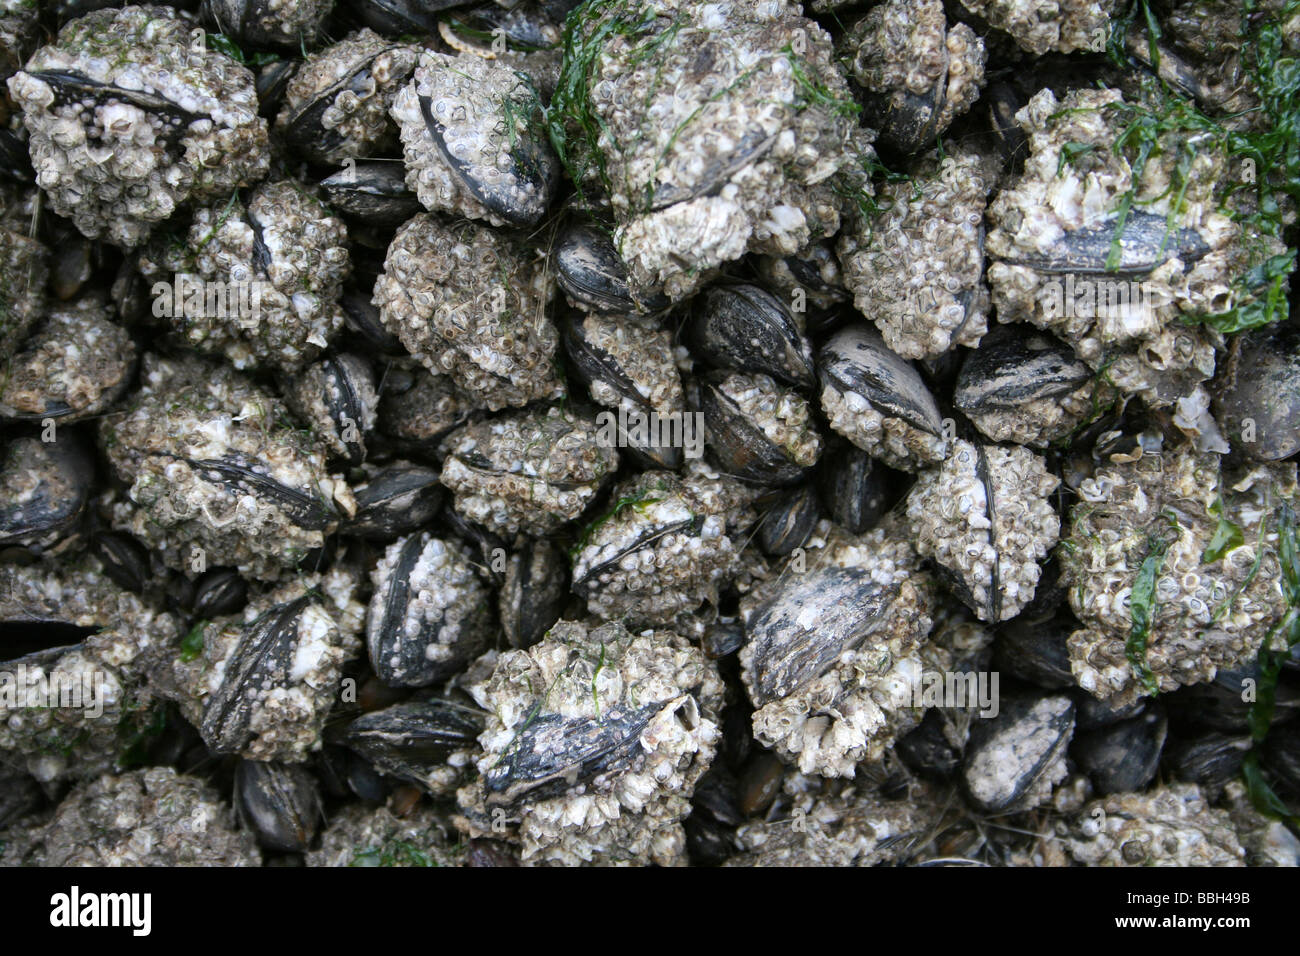 Barnacle verkrusteten gemeinsame Miesmuscheln Mytilus Edulis auf einem Felsen in New Brighton, Wallasey, The Wirral, Merseyside, Großbritannien Stockfoto